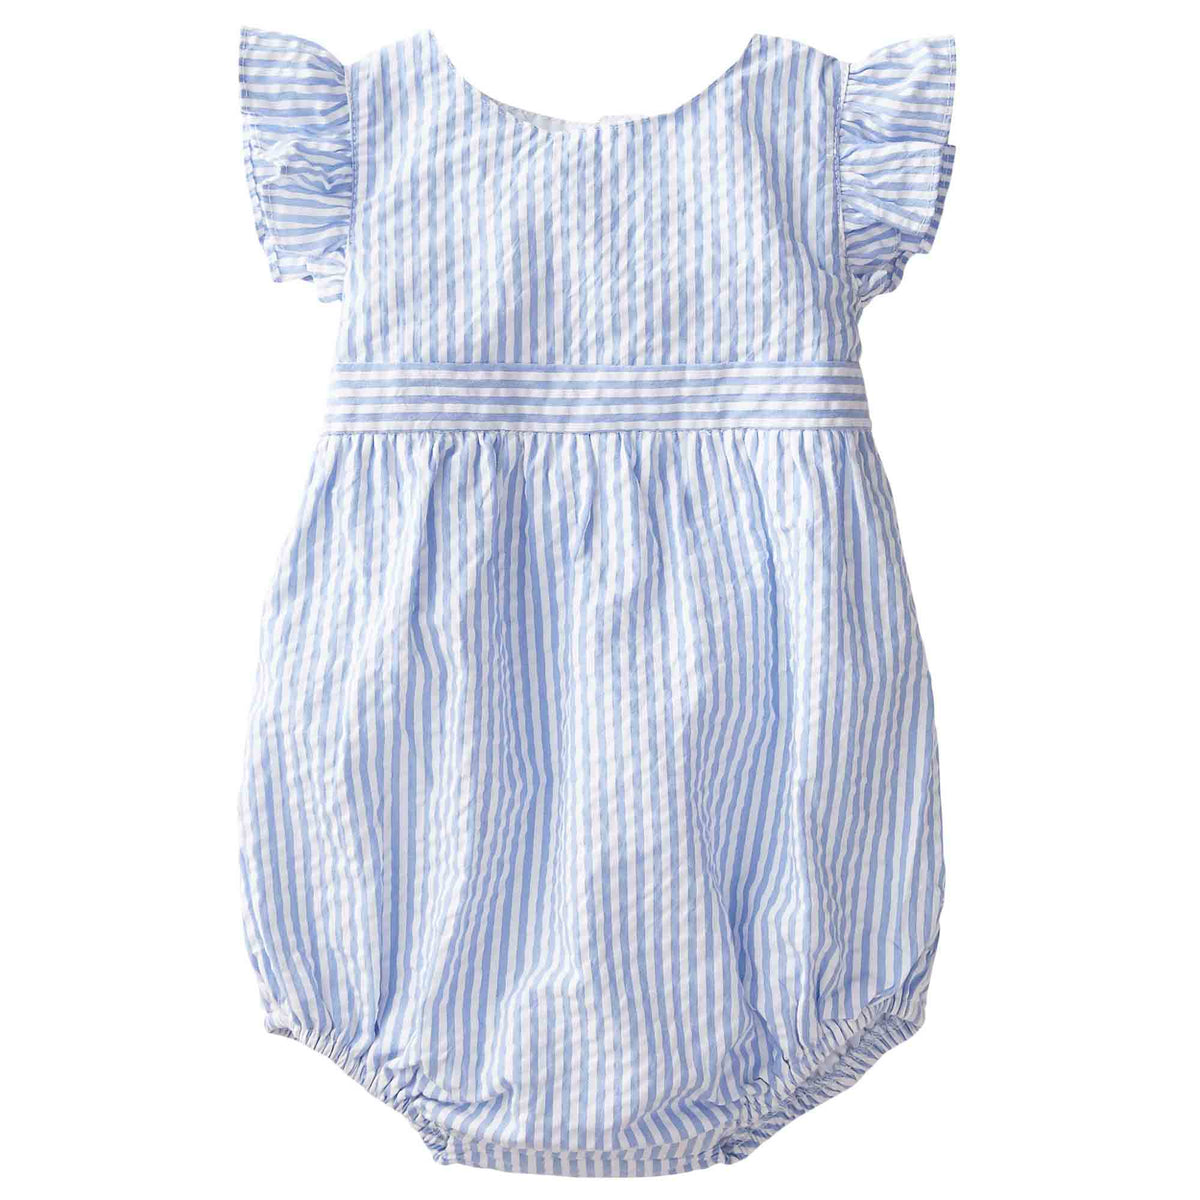 Classic and Preppy Beatrice Bubble, Vista Blue Seersucker-Baby Rompers-Vista Blue Seersucker-0-3M-CPC - Classic Prep Childrenswear